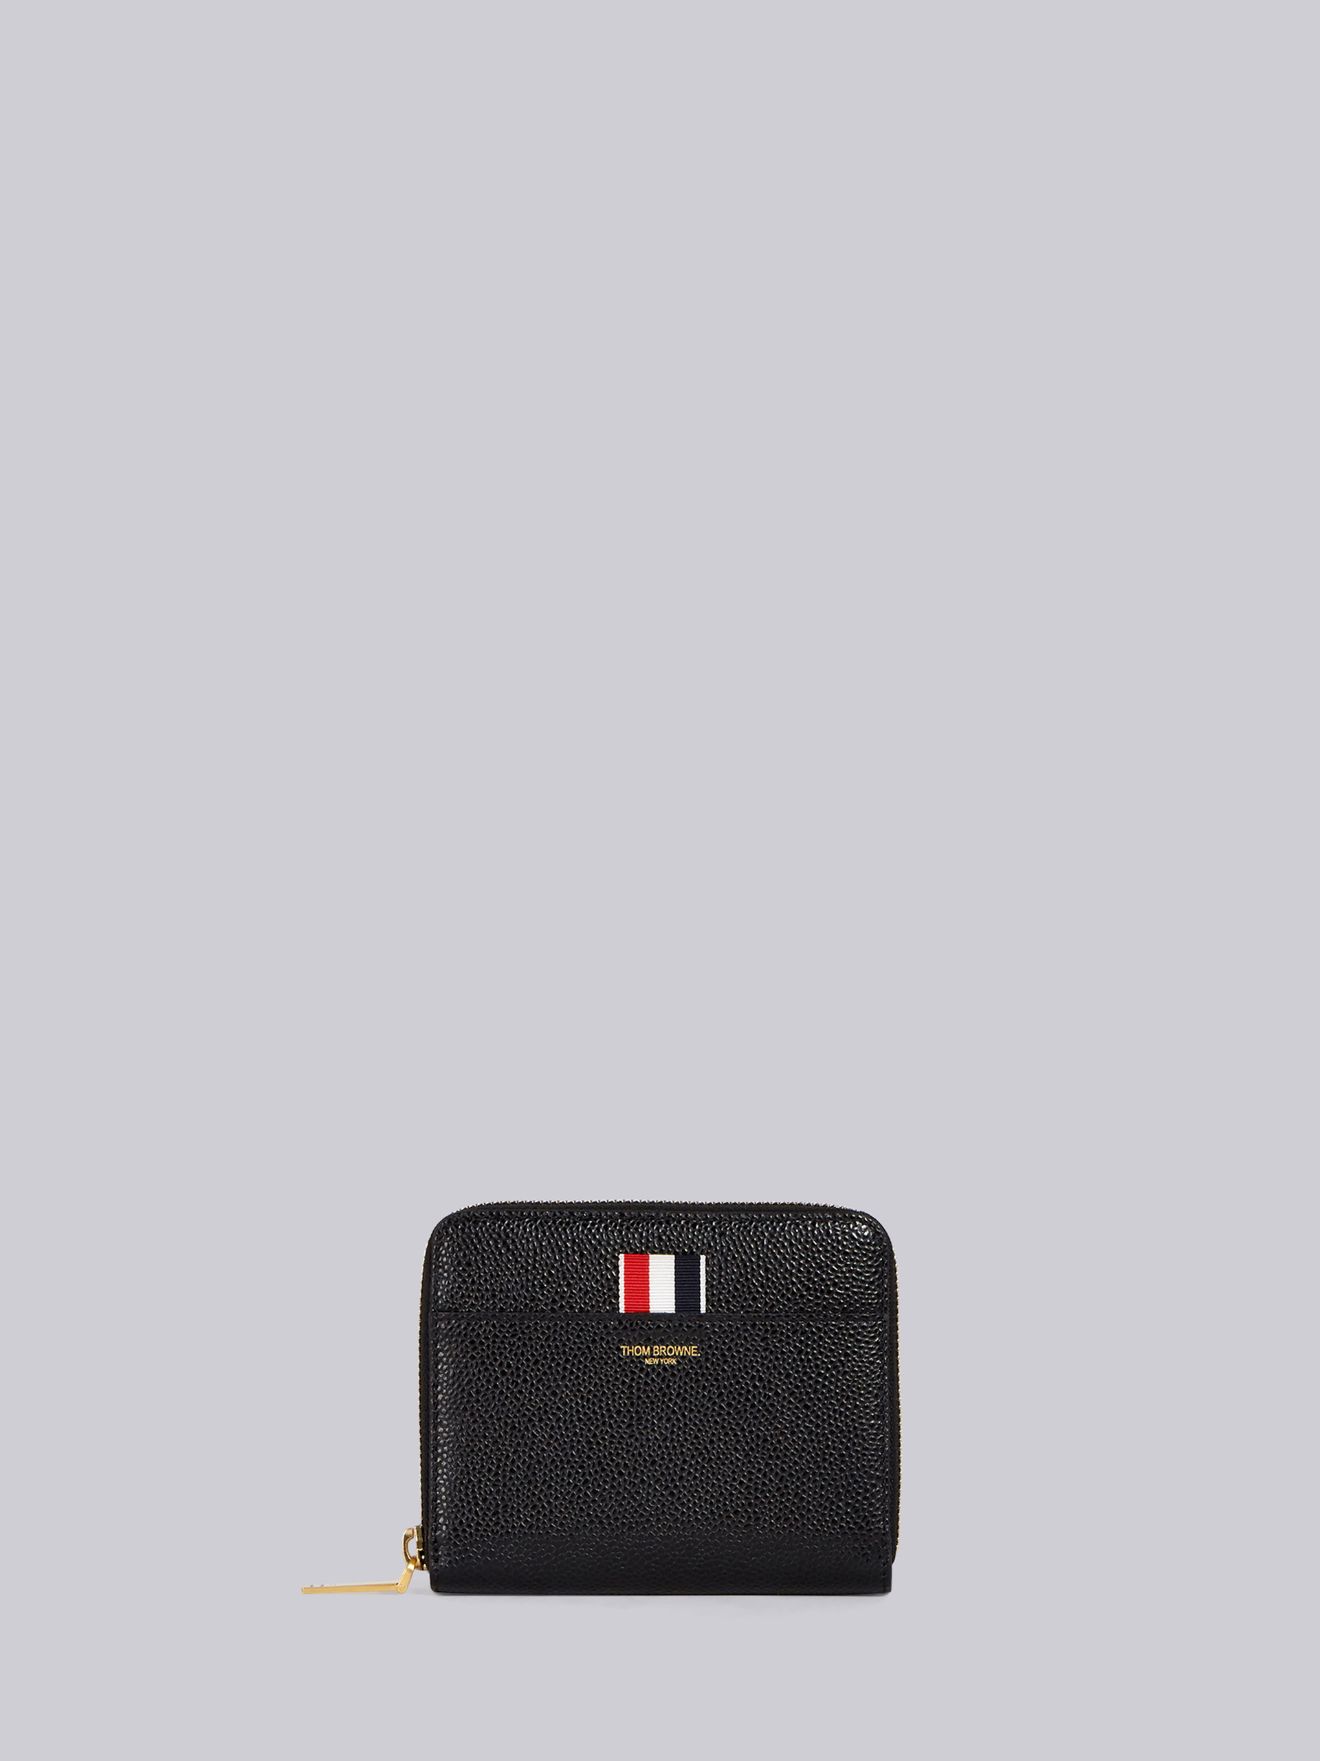 ファスナー財布ブラック | Thom Browne 公式オンラインサイト